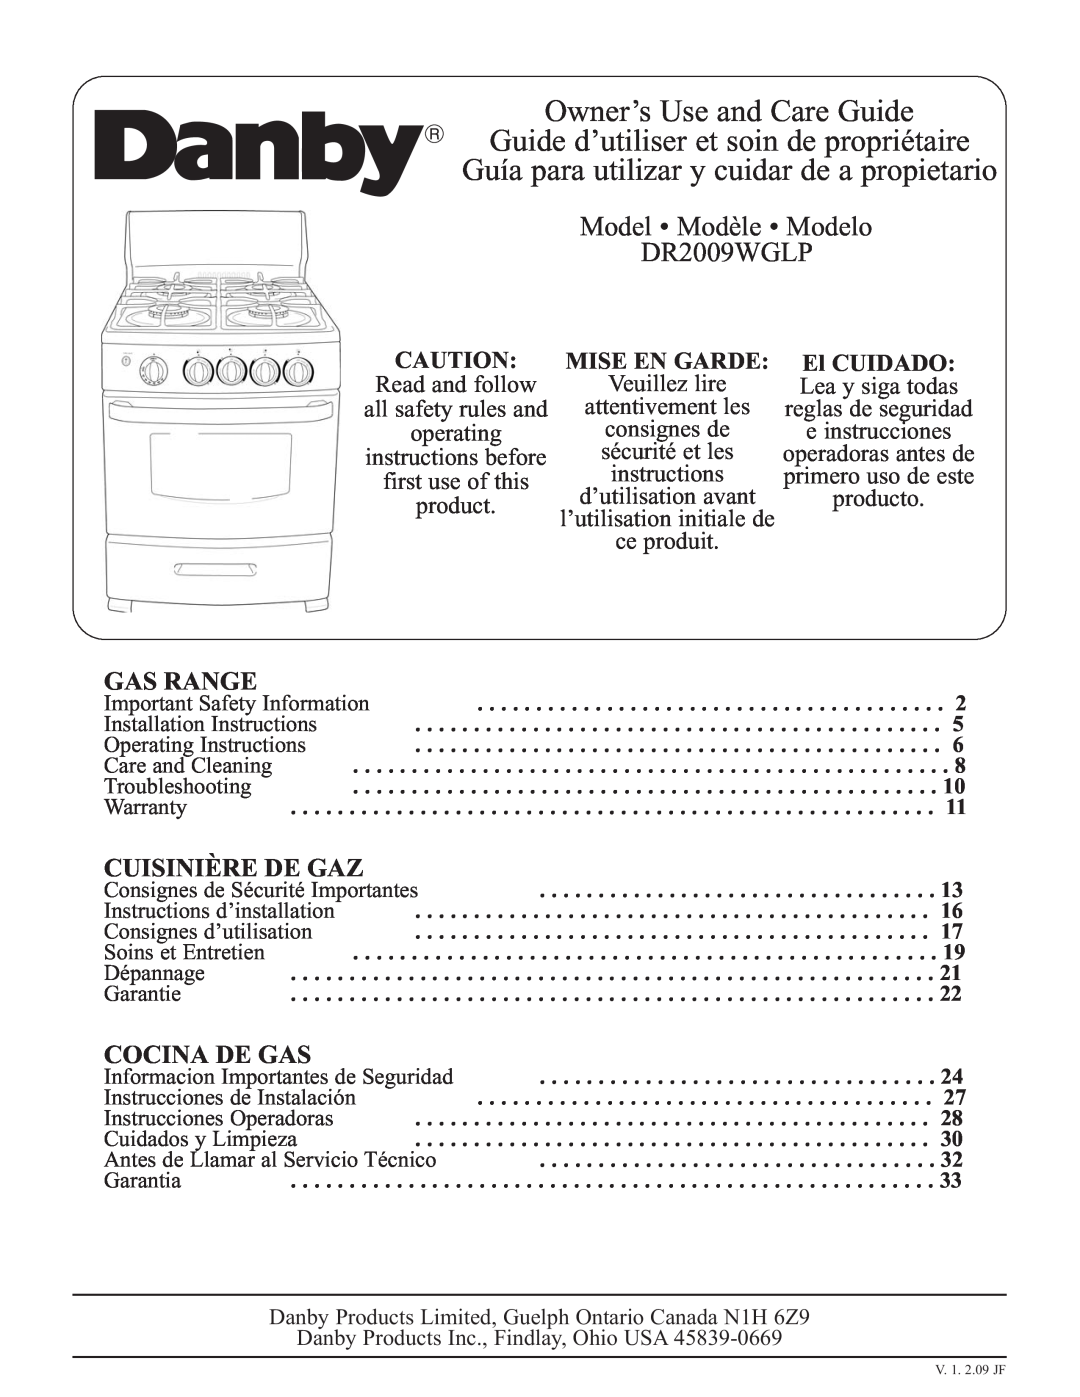 Danby DR2009WGLP installation instructions Gas Range, Cuisinière De Gaz, Cocina De Gas, Mise En Garde, El CUIDADO 